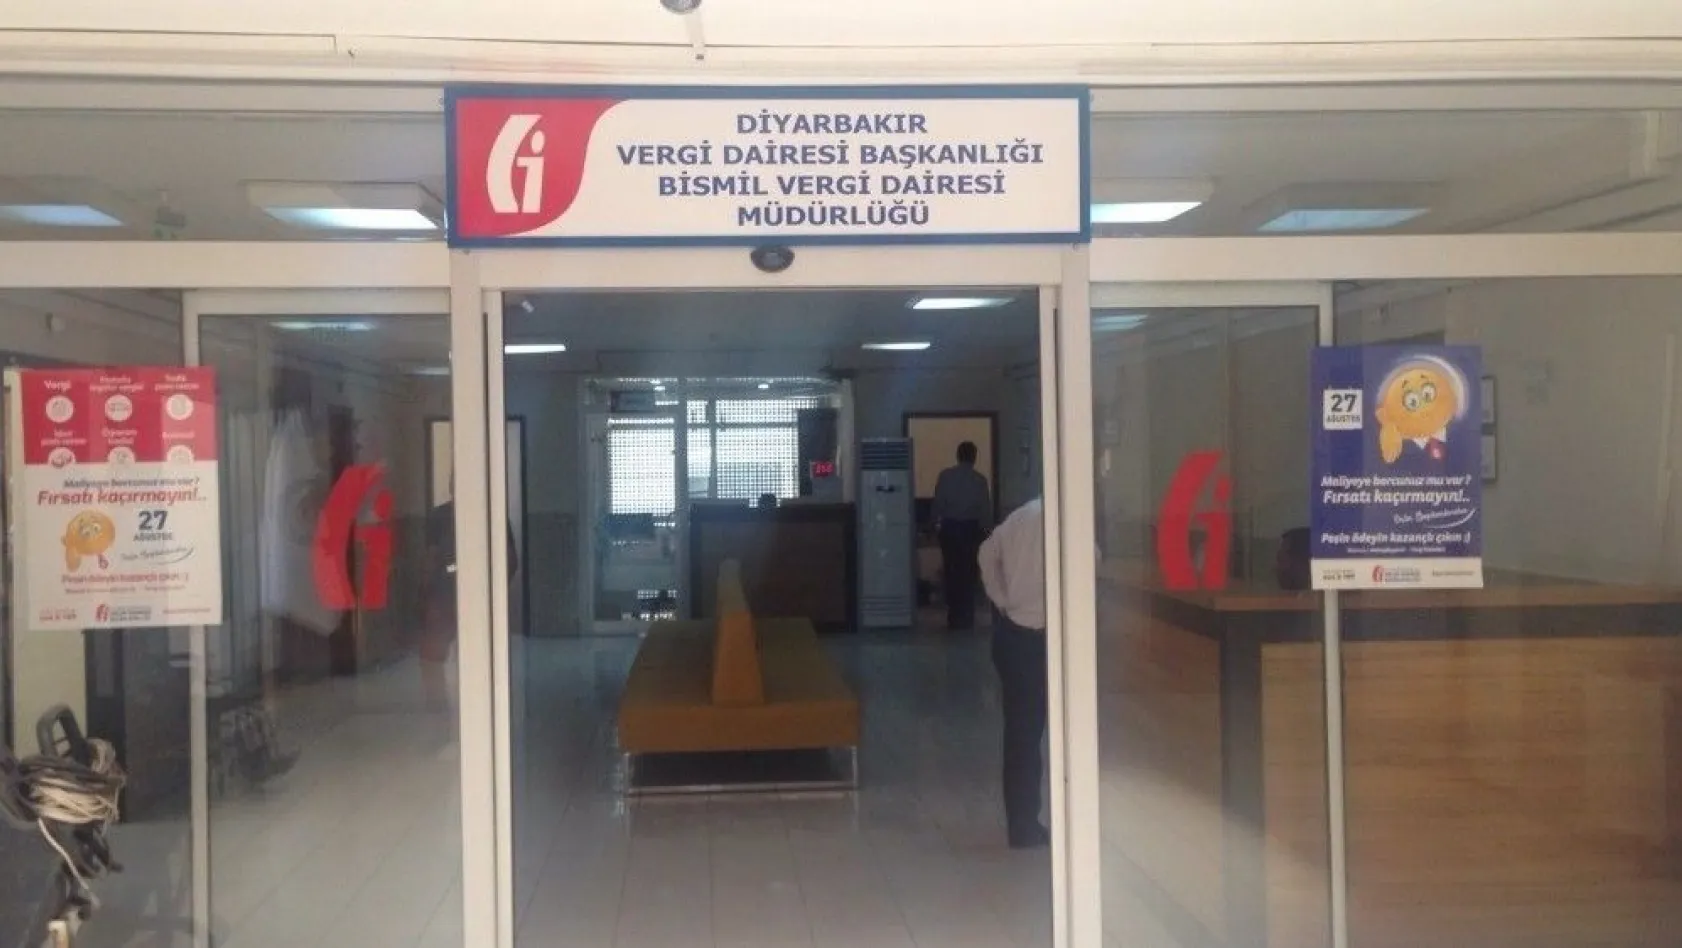 Bismil'de Vergi Dairesi Müdürlüğü açıldı
